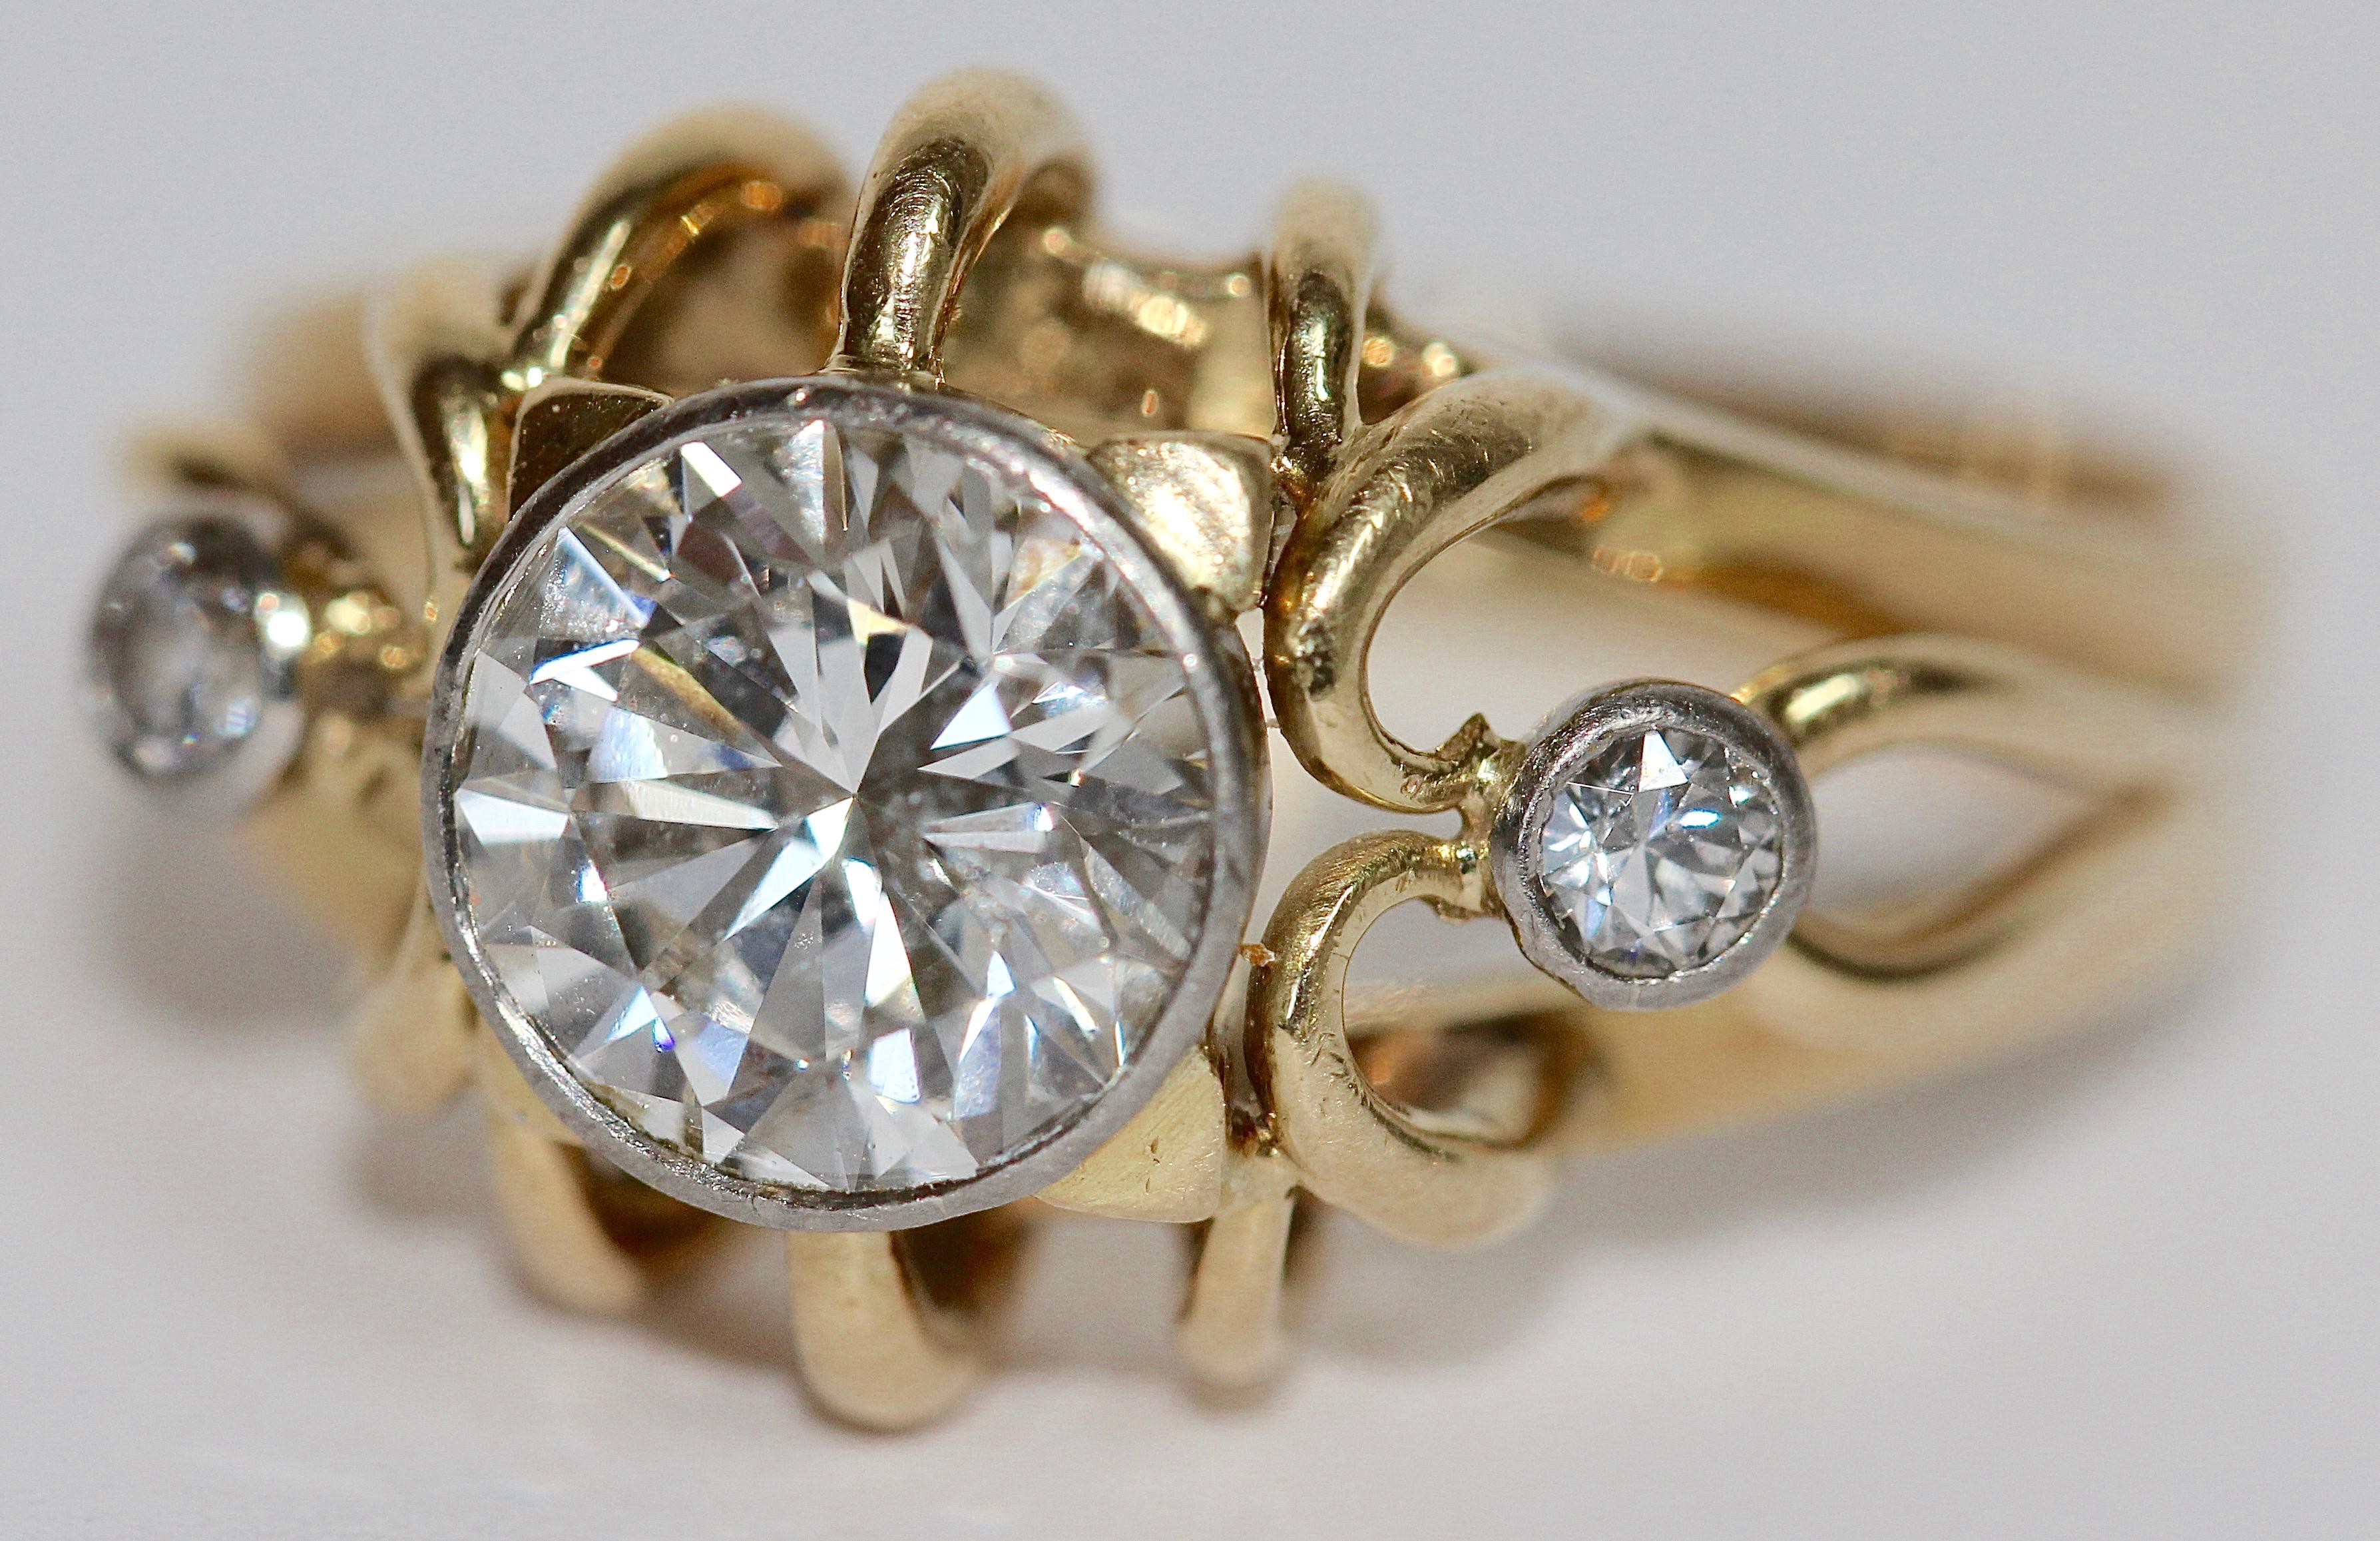 1.5 carat solitaire diamond ring